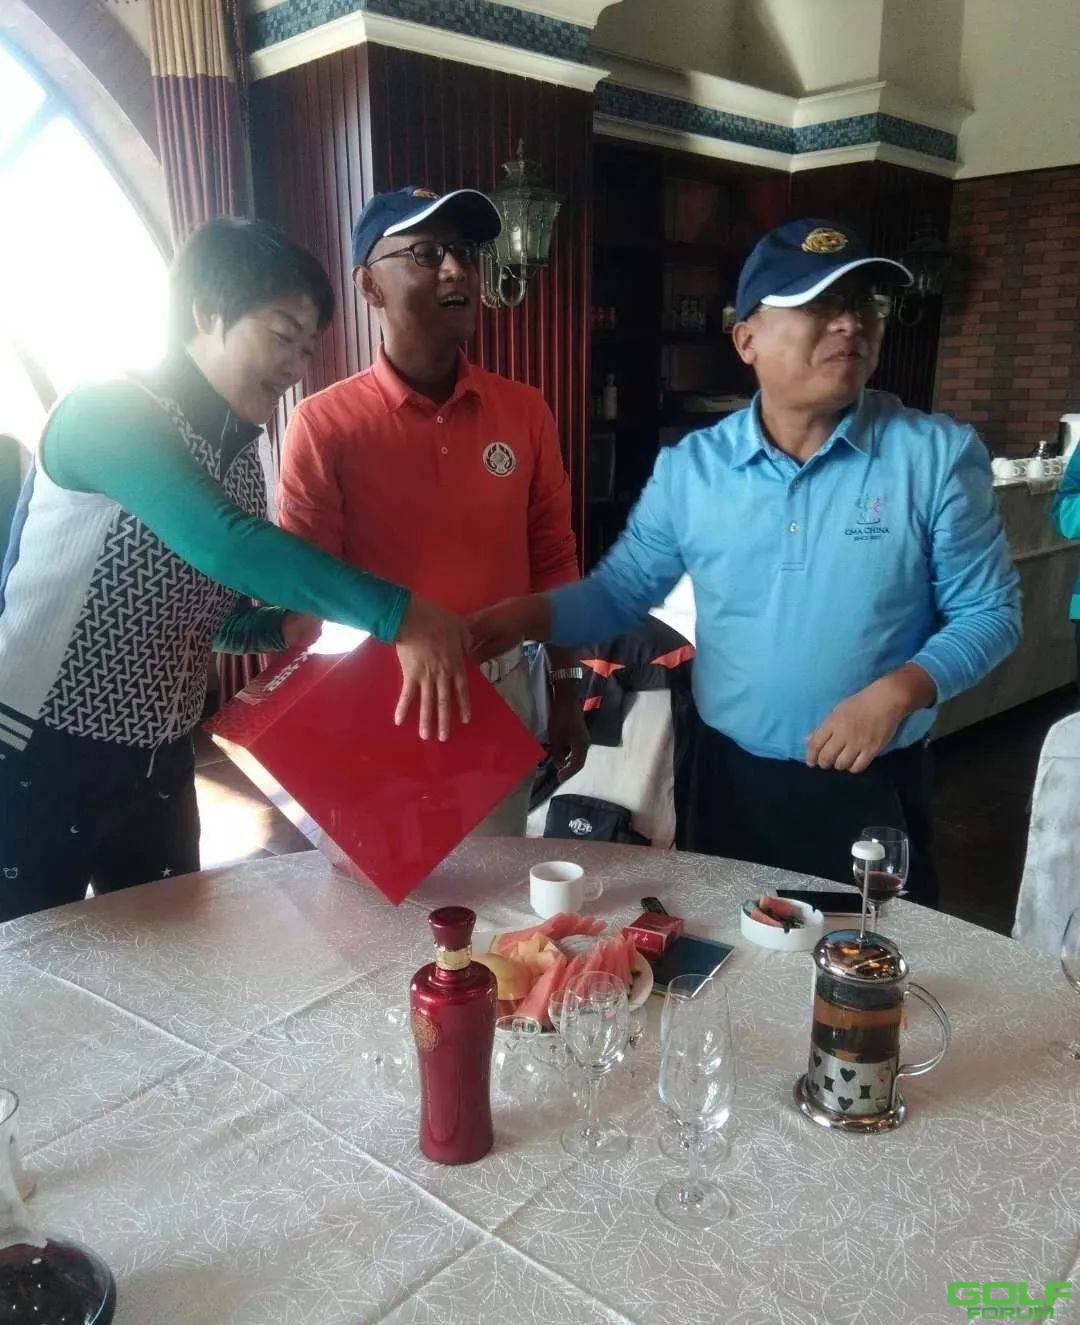 唐山地区高尔夫俱乐部员工对抗赛圆满收官